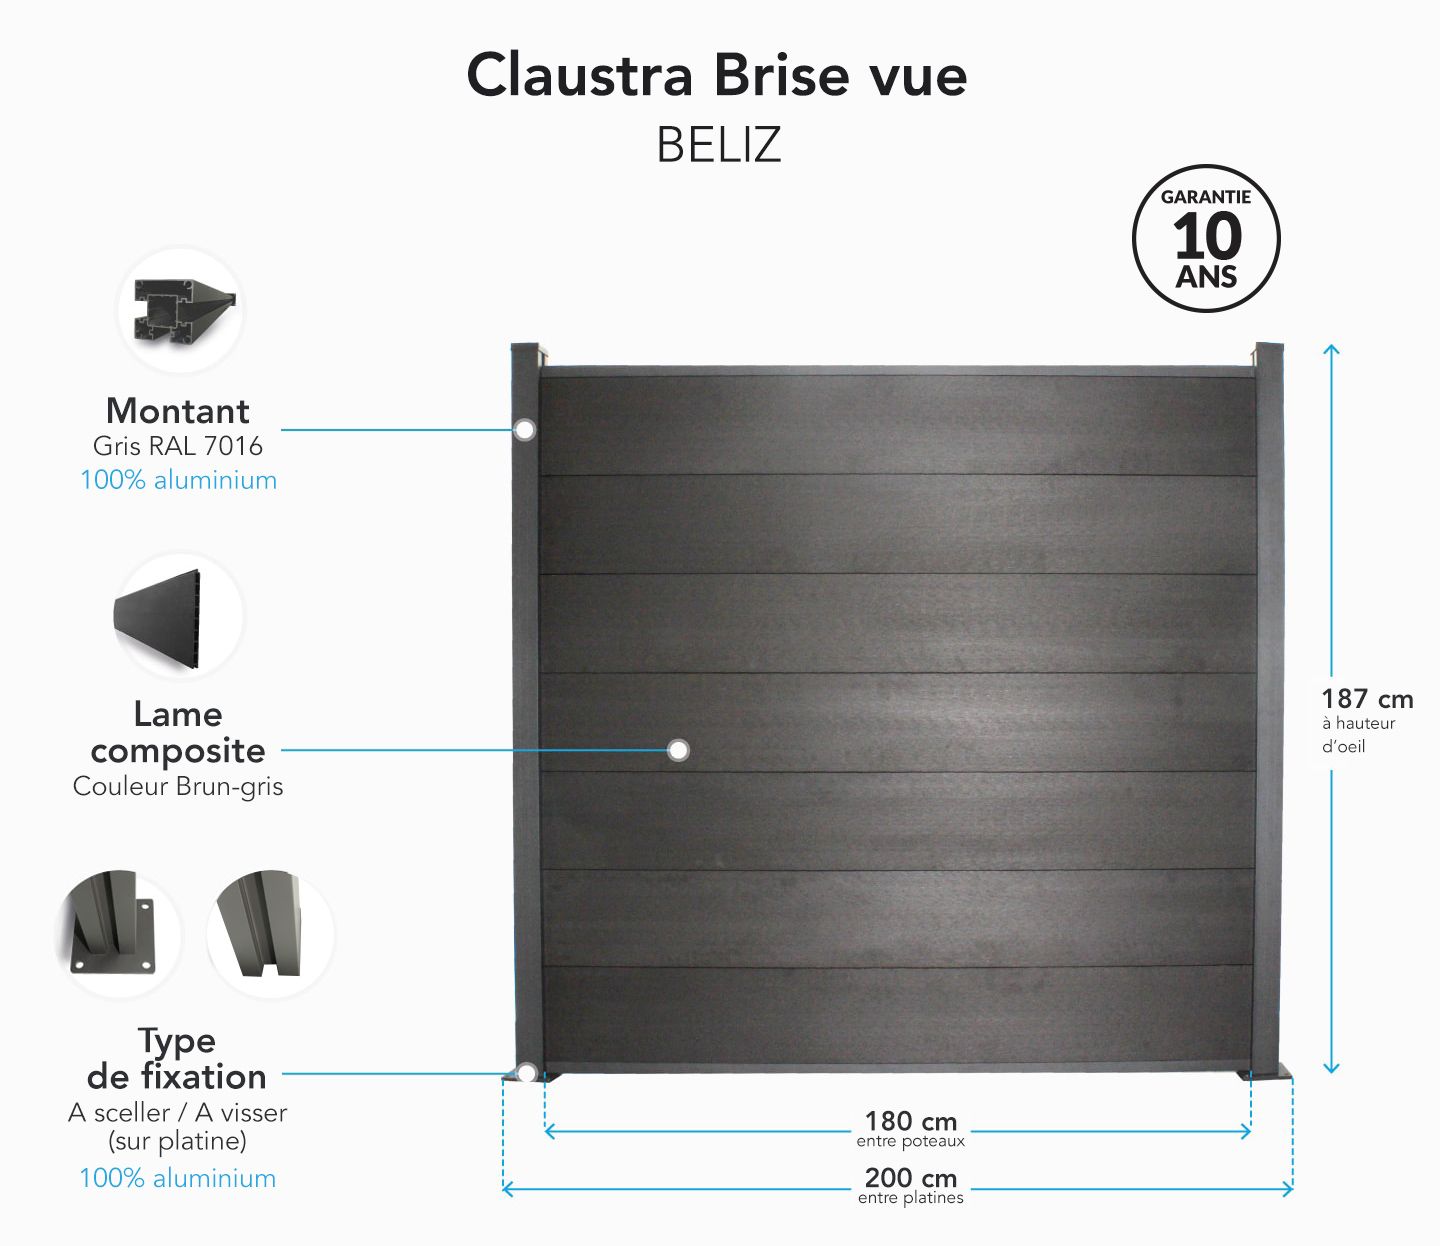 Claustra beliz - clôture en composite - mister menuiserie - dimensions : h187 x l200 cm - mms-claustra-beliz_0